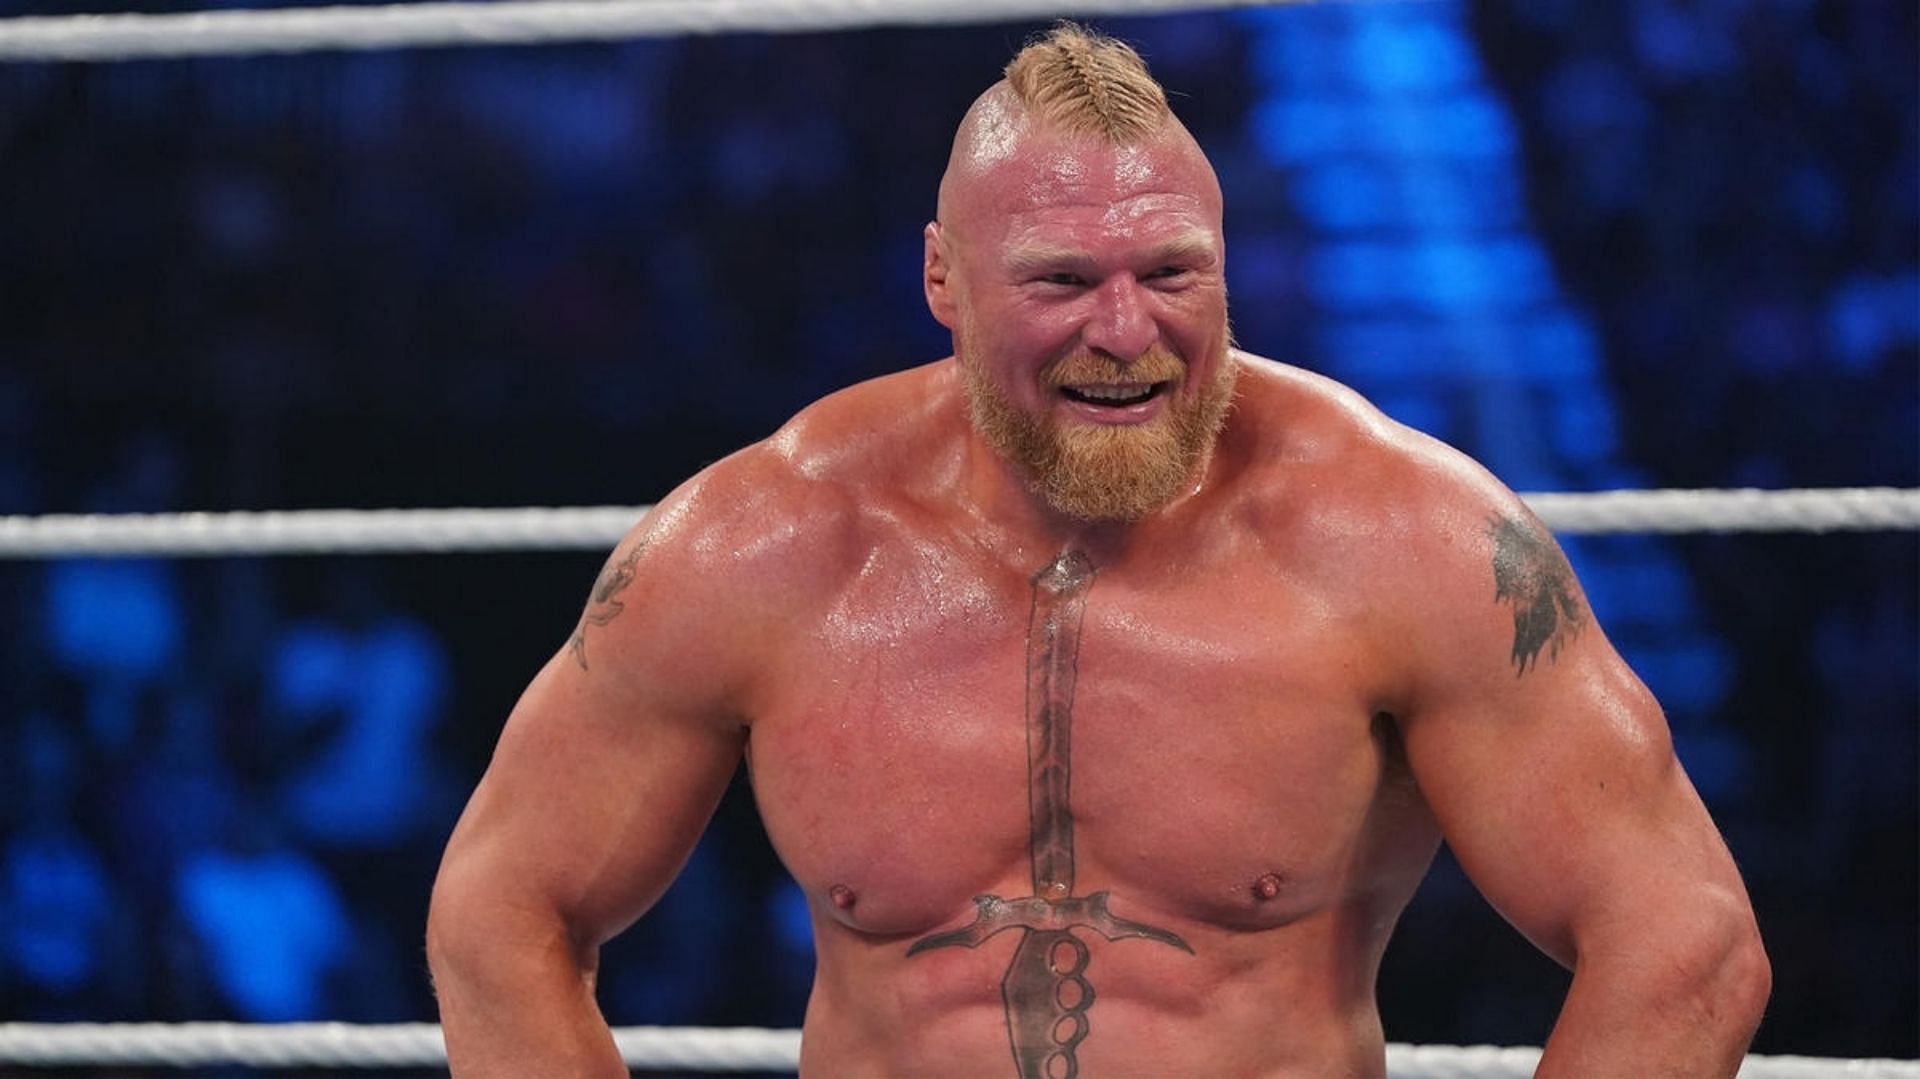 Brock Lesnar during a match